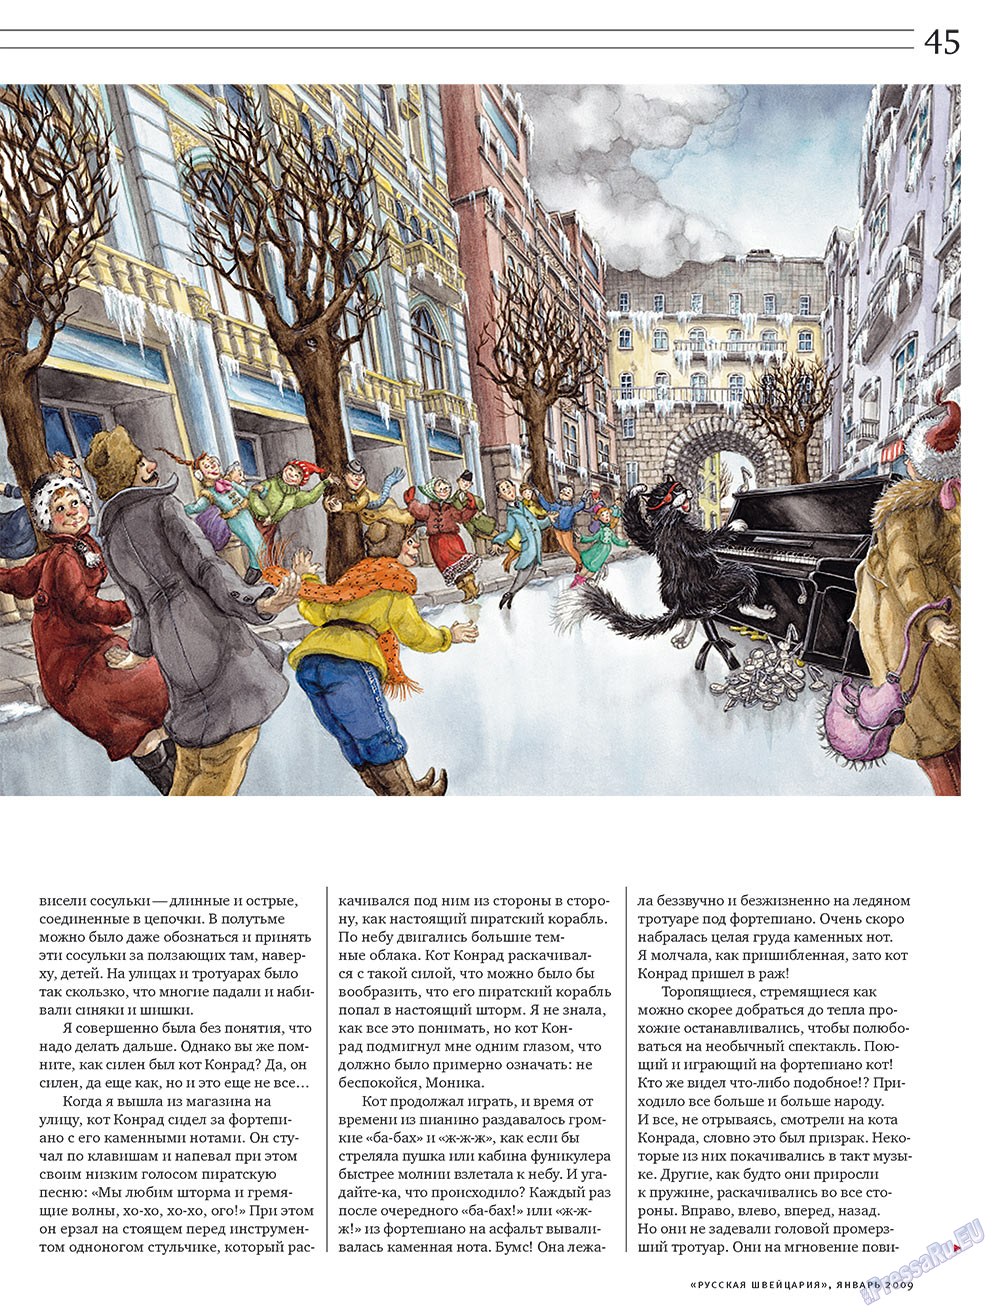 Русская Швейцария, журнал. 2009 №1 стр.45